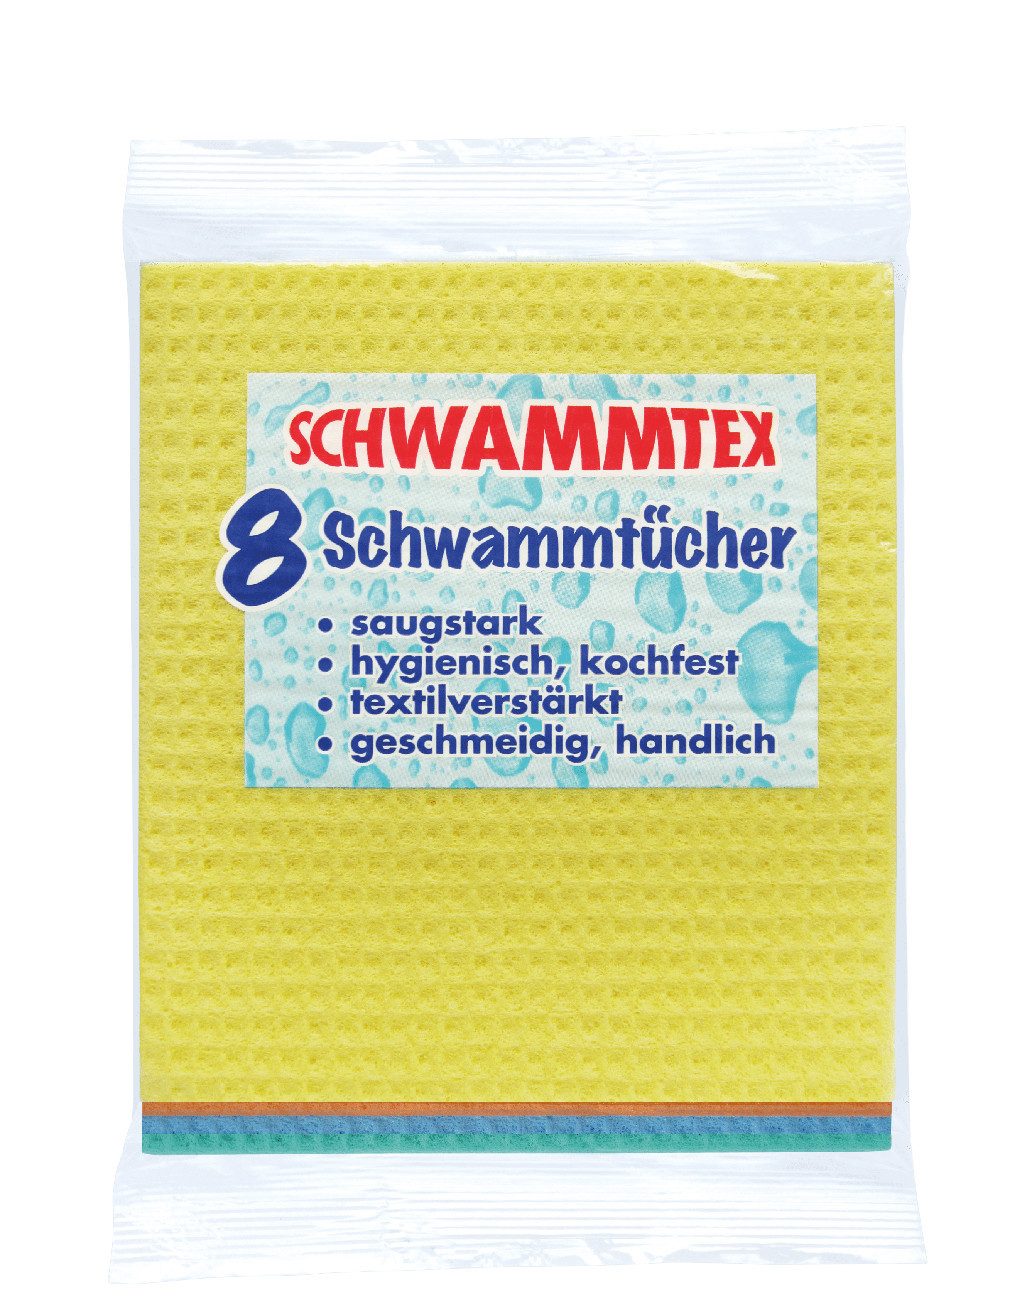 SPONTEX Schwammtuch 19121023, Schwammtex-Schwammtücher - 8 Stück -, saugstark und kochfest - Perfekt gegen Schmutz auf Arbeitsflächen